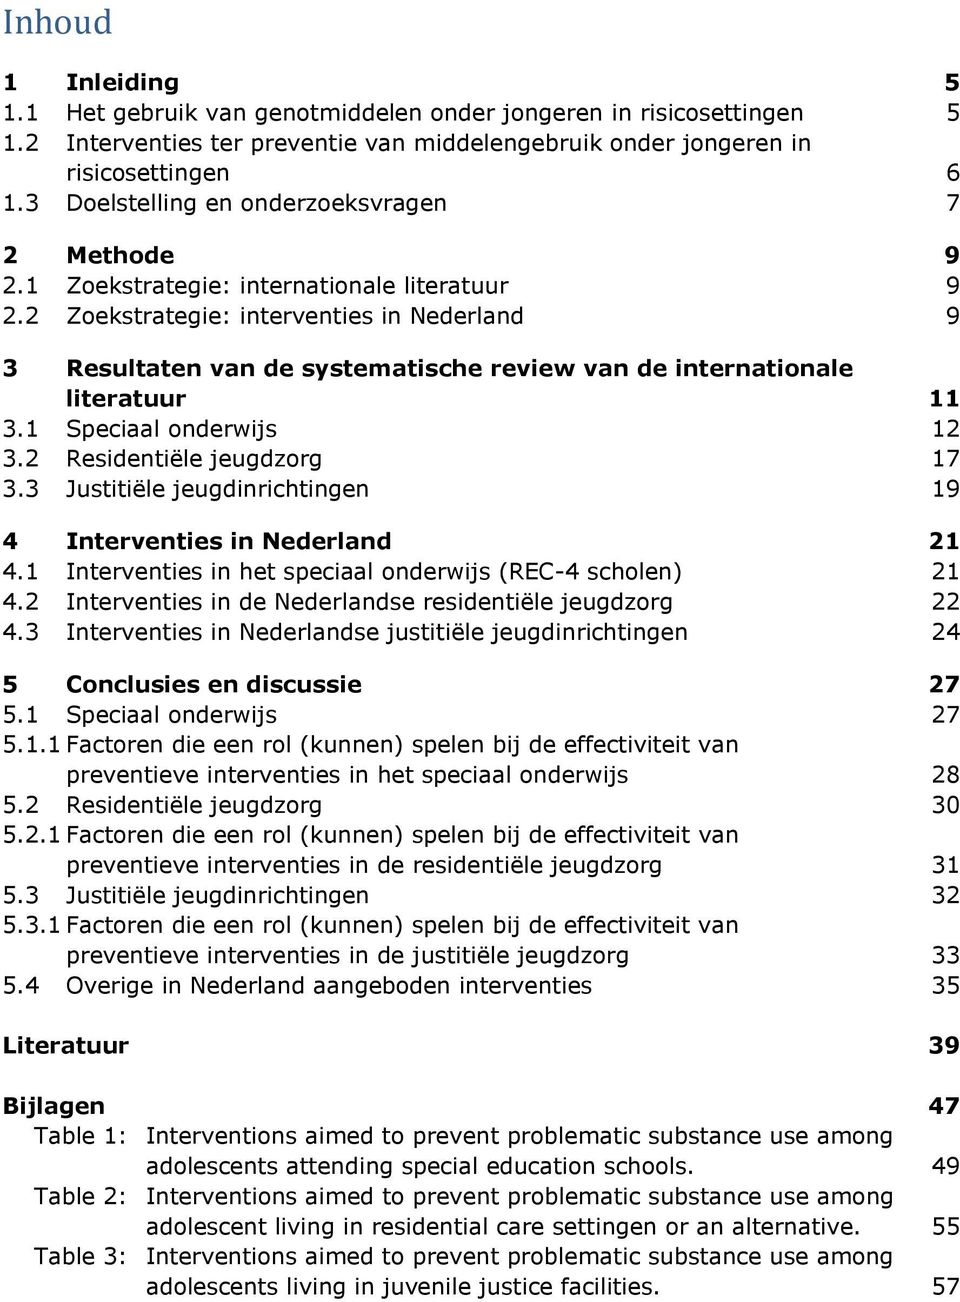 2 Zoekstrategie: interventies in Nederland 9 3 Resultaten van de systematische review van de internationale literatuur 11 3.1 Speciaal onderwijs 12 3.2 Residentiële jeugdzorg 17 3.